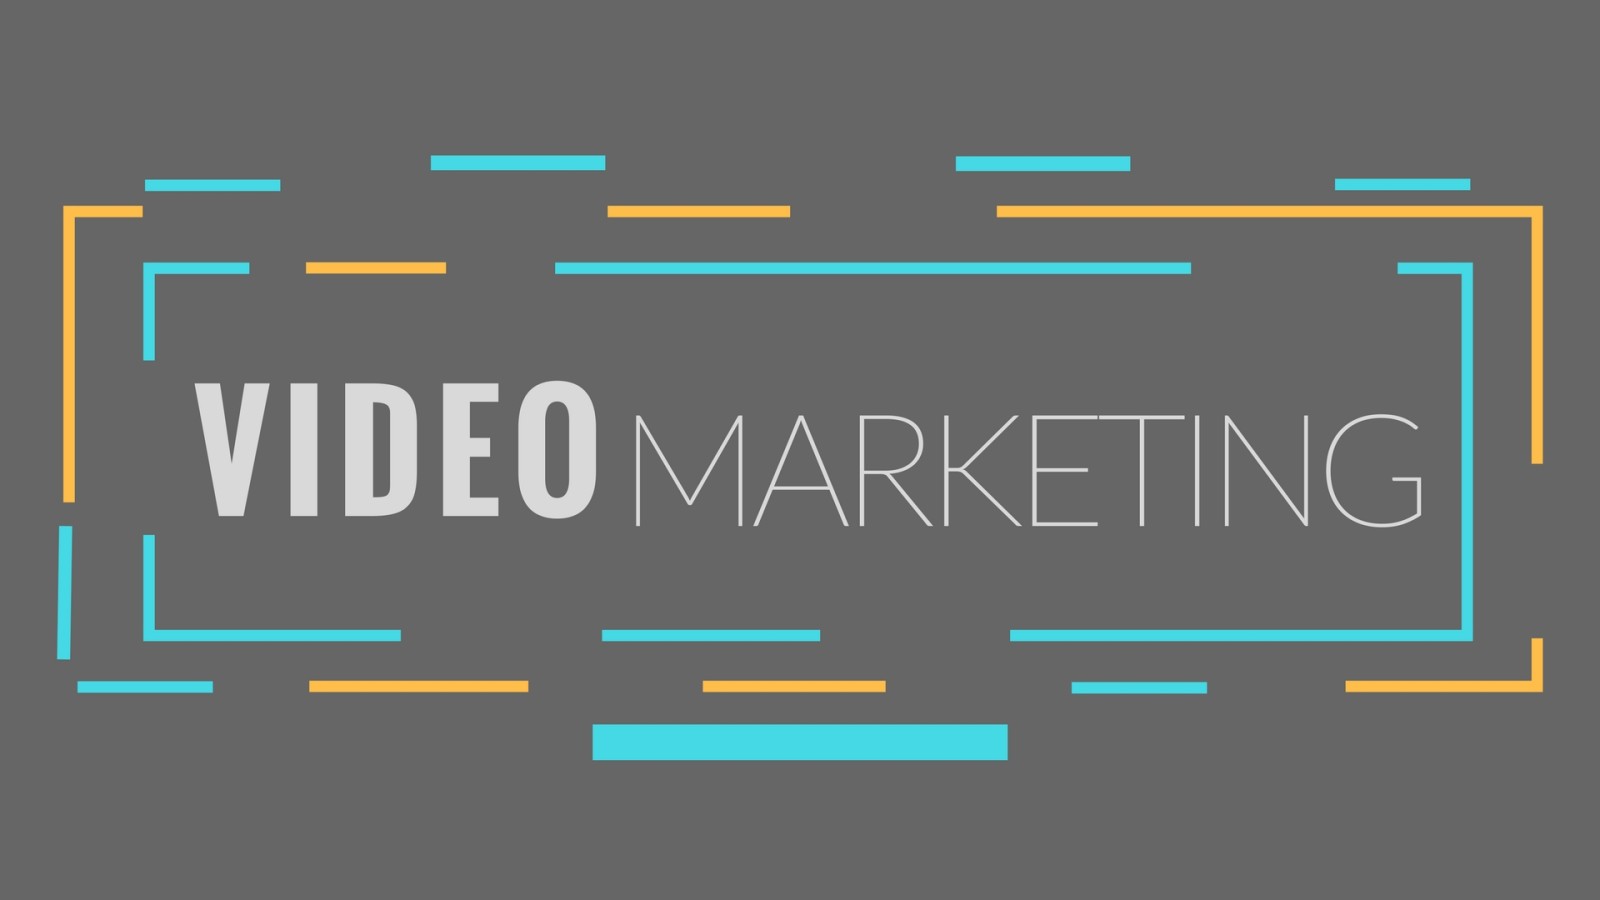 Video Marketing è strategia vincente